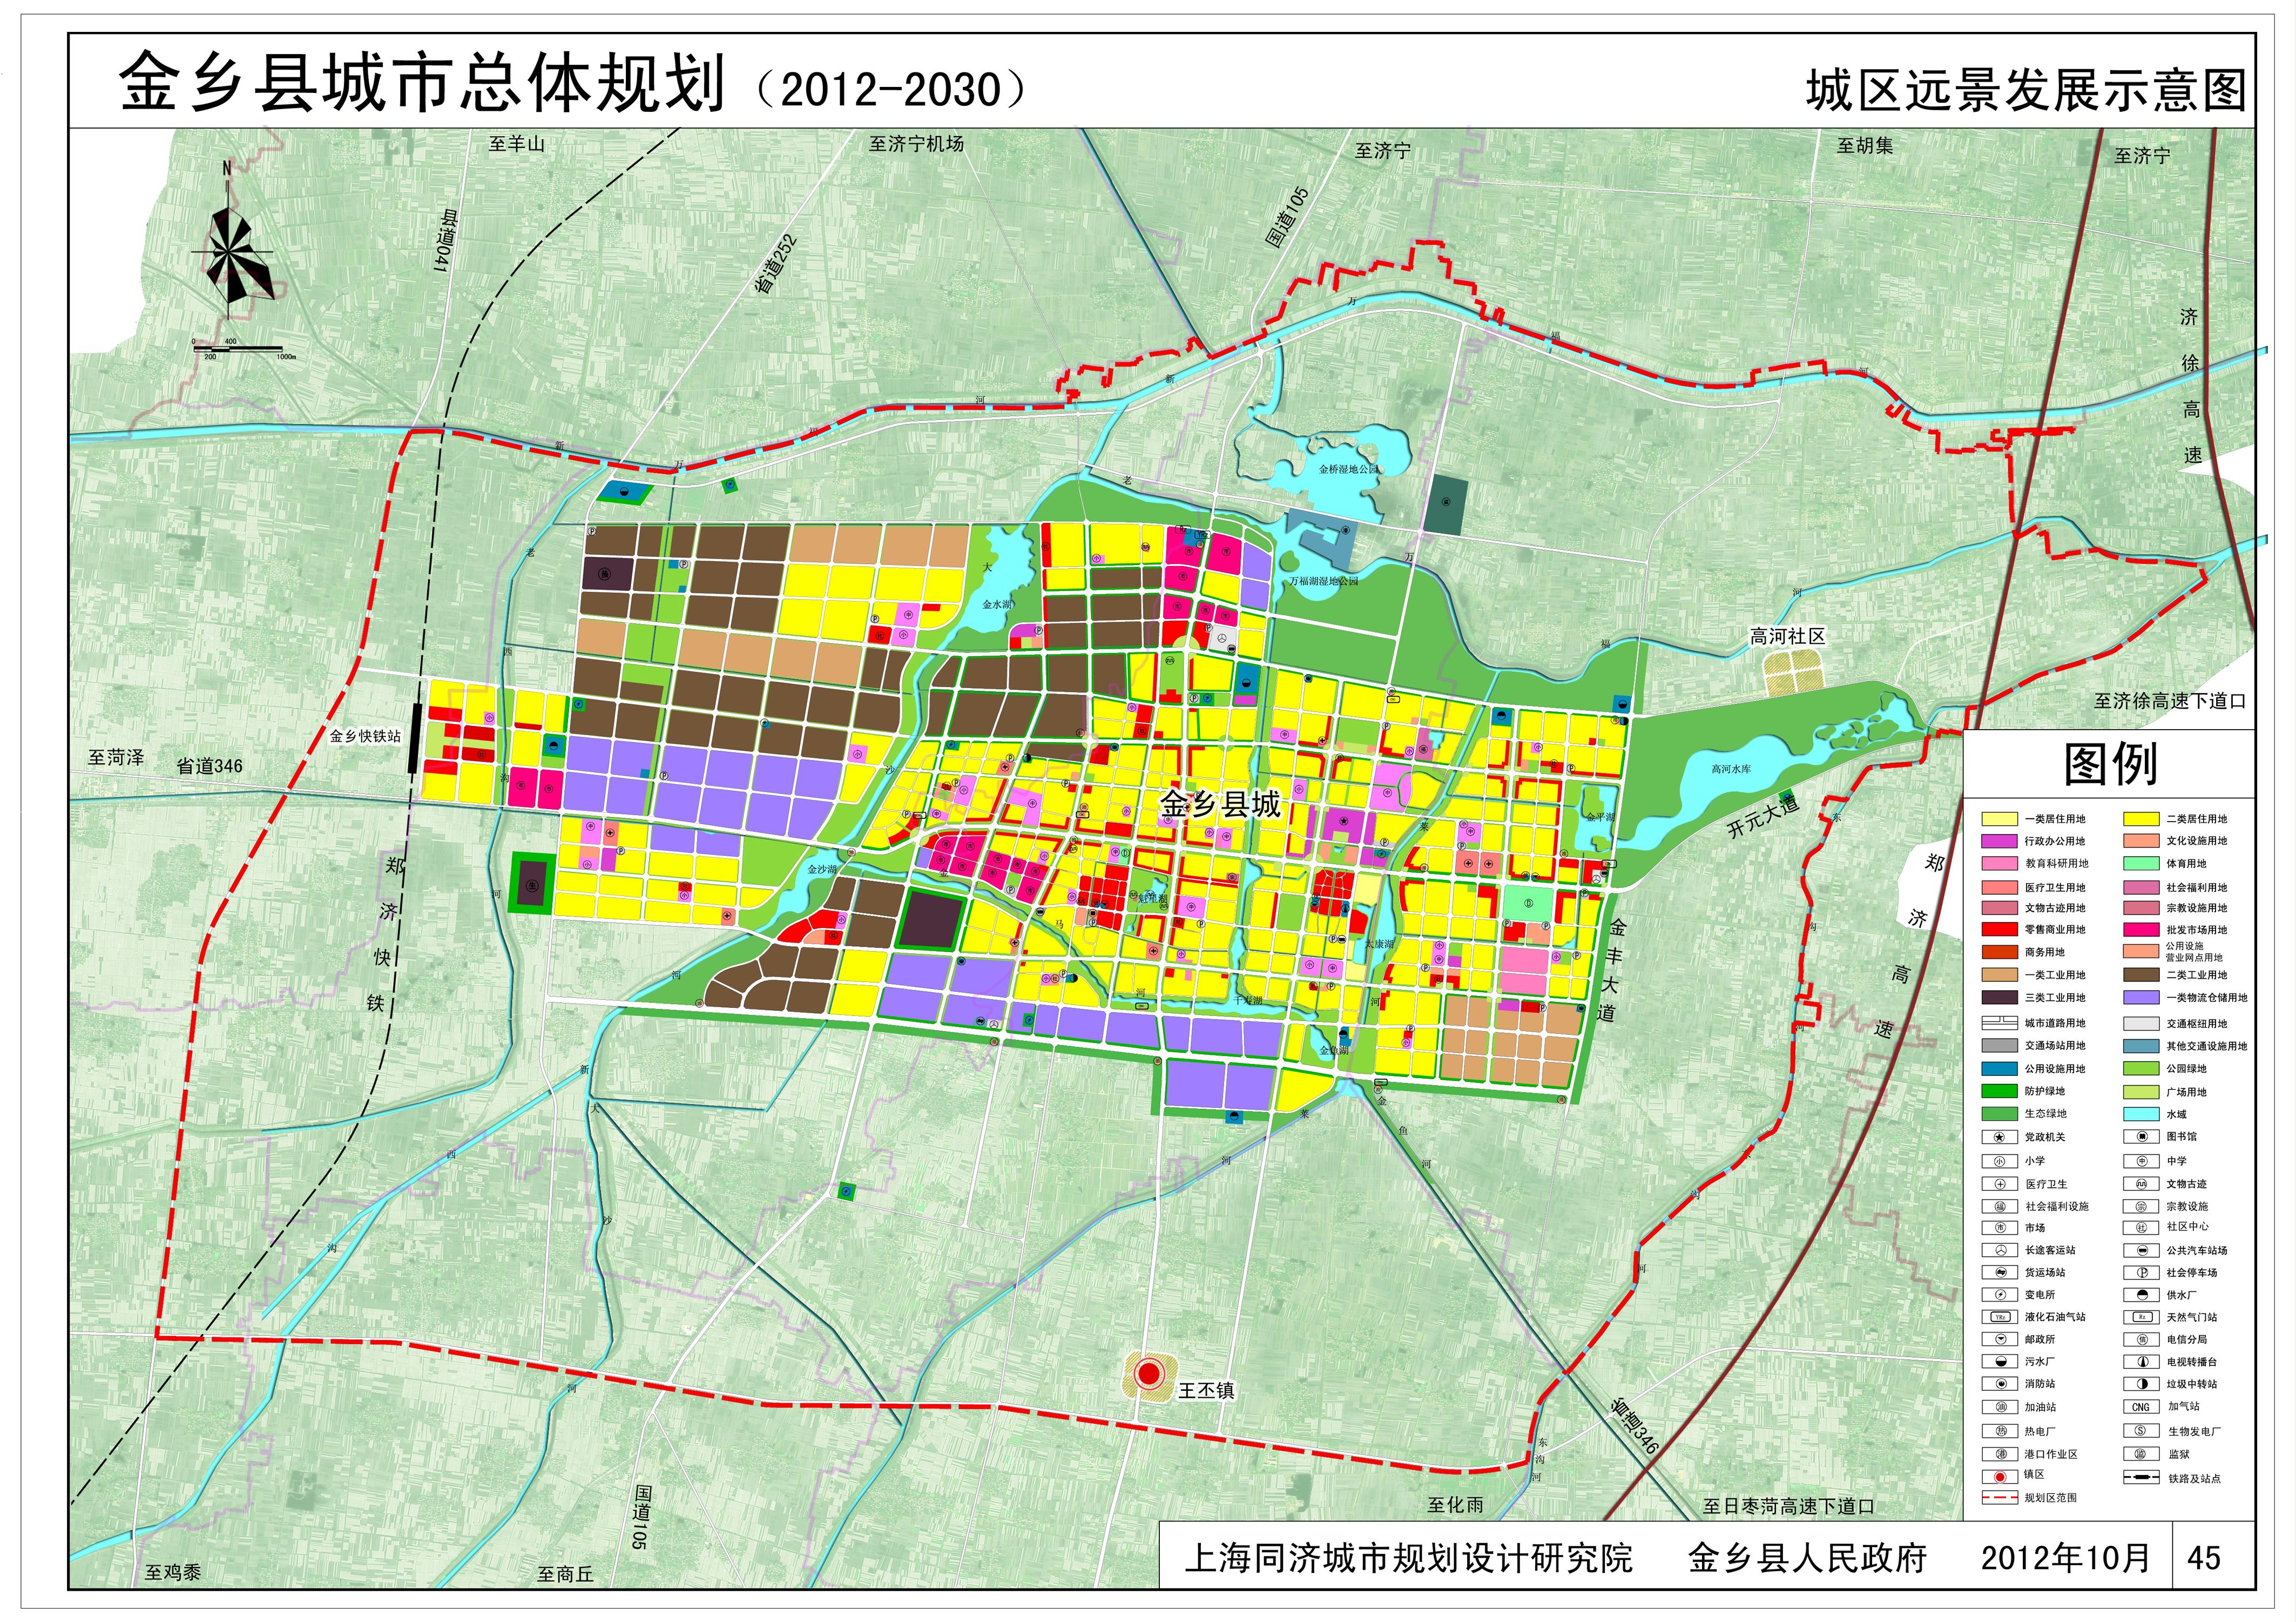 金乡县城市总体规划20122030城市远景发展示意图